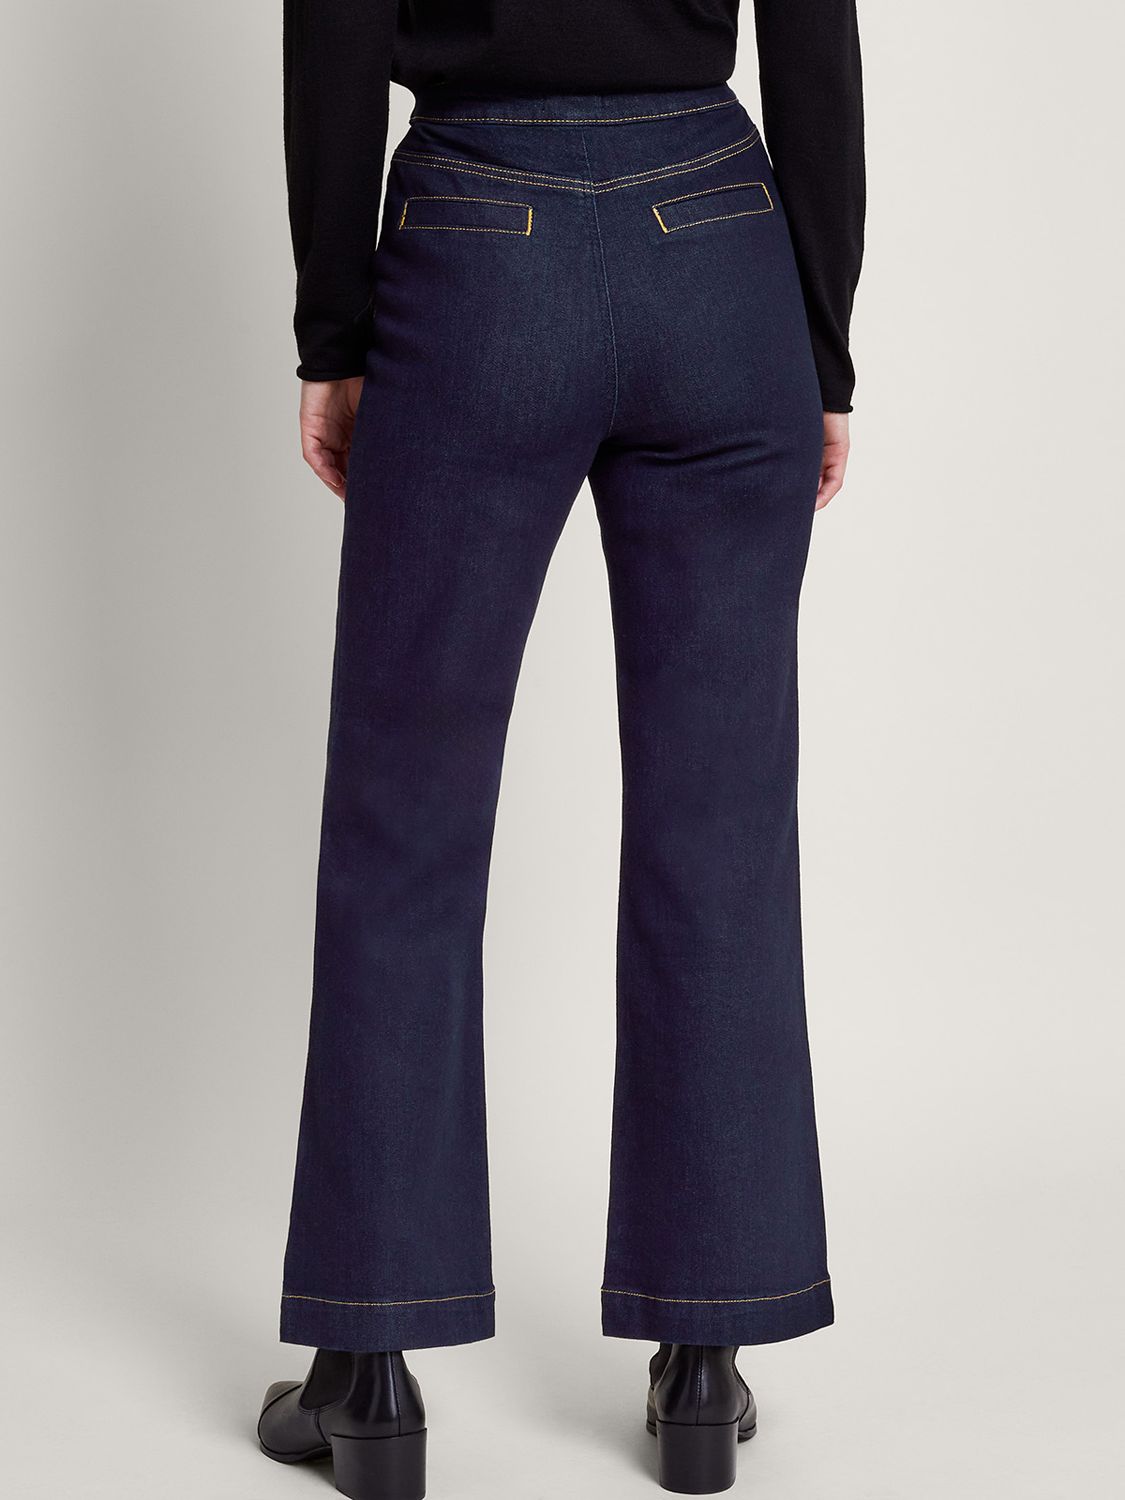 Monsoon Rose Button Bootcut Jeans, Indigo at John Lewis & Partners